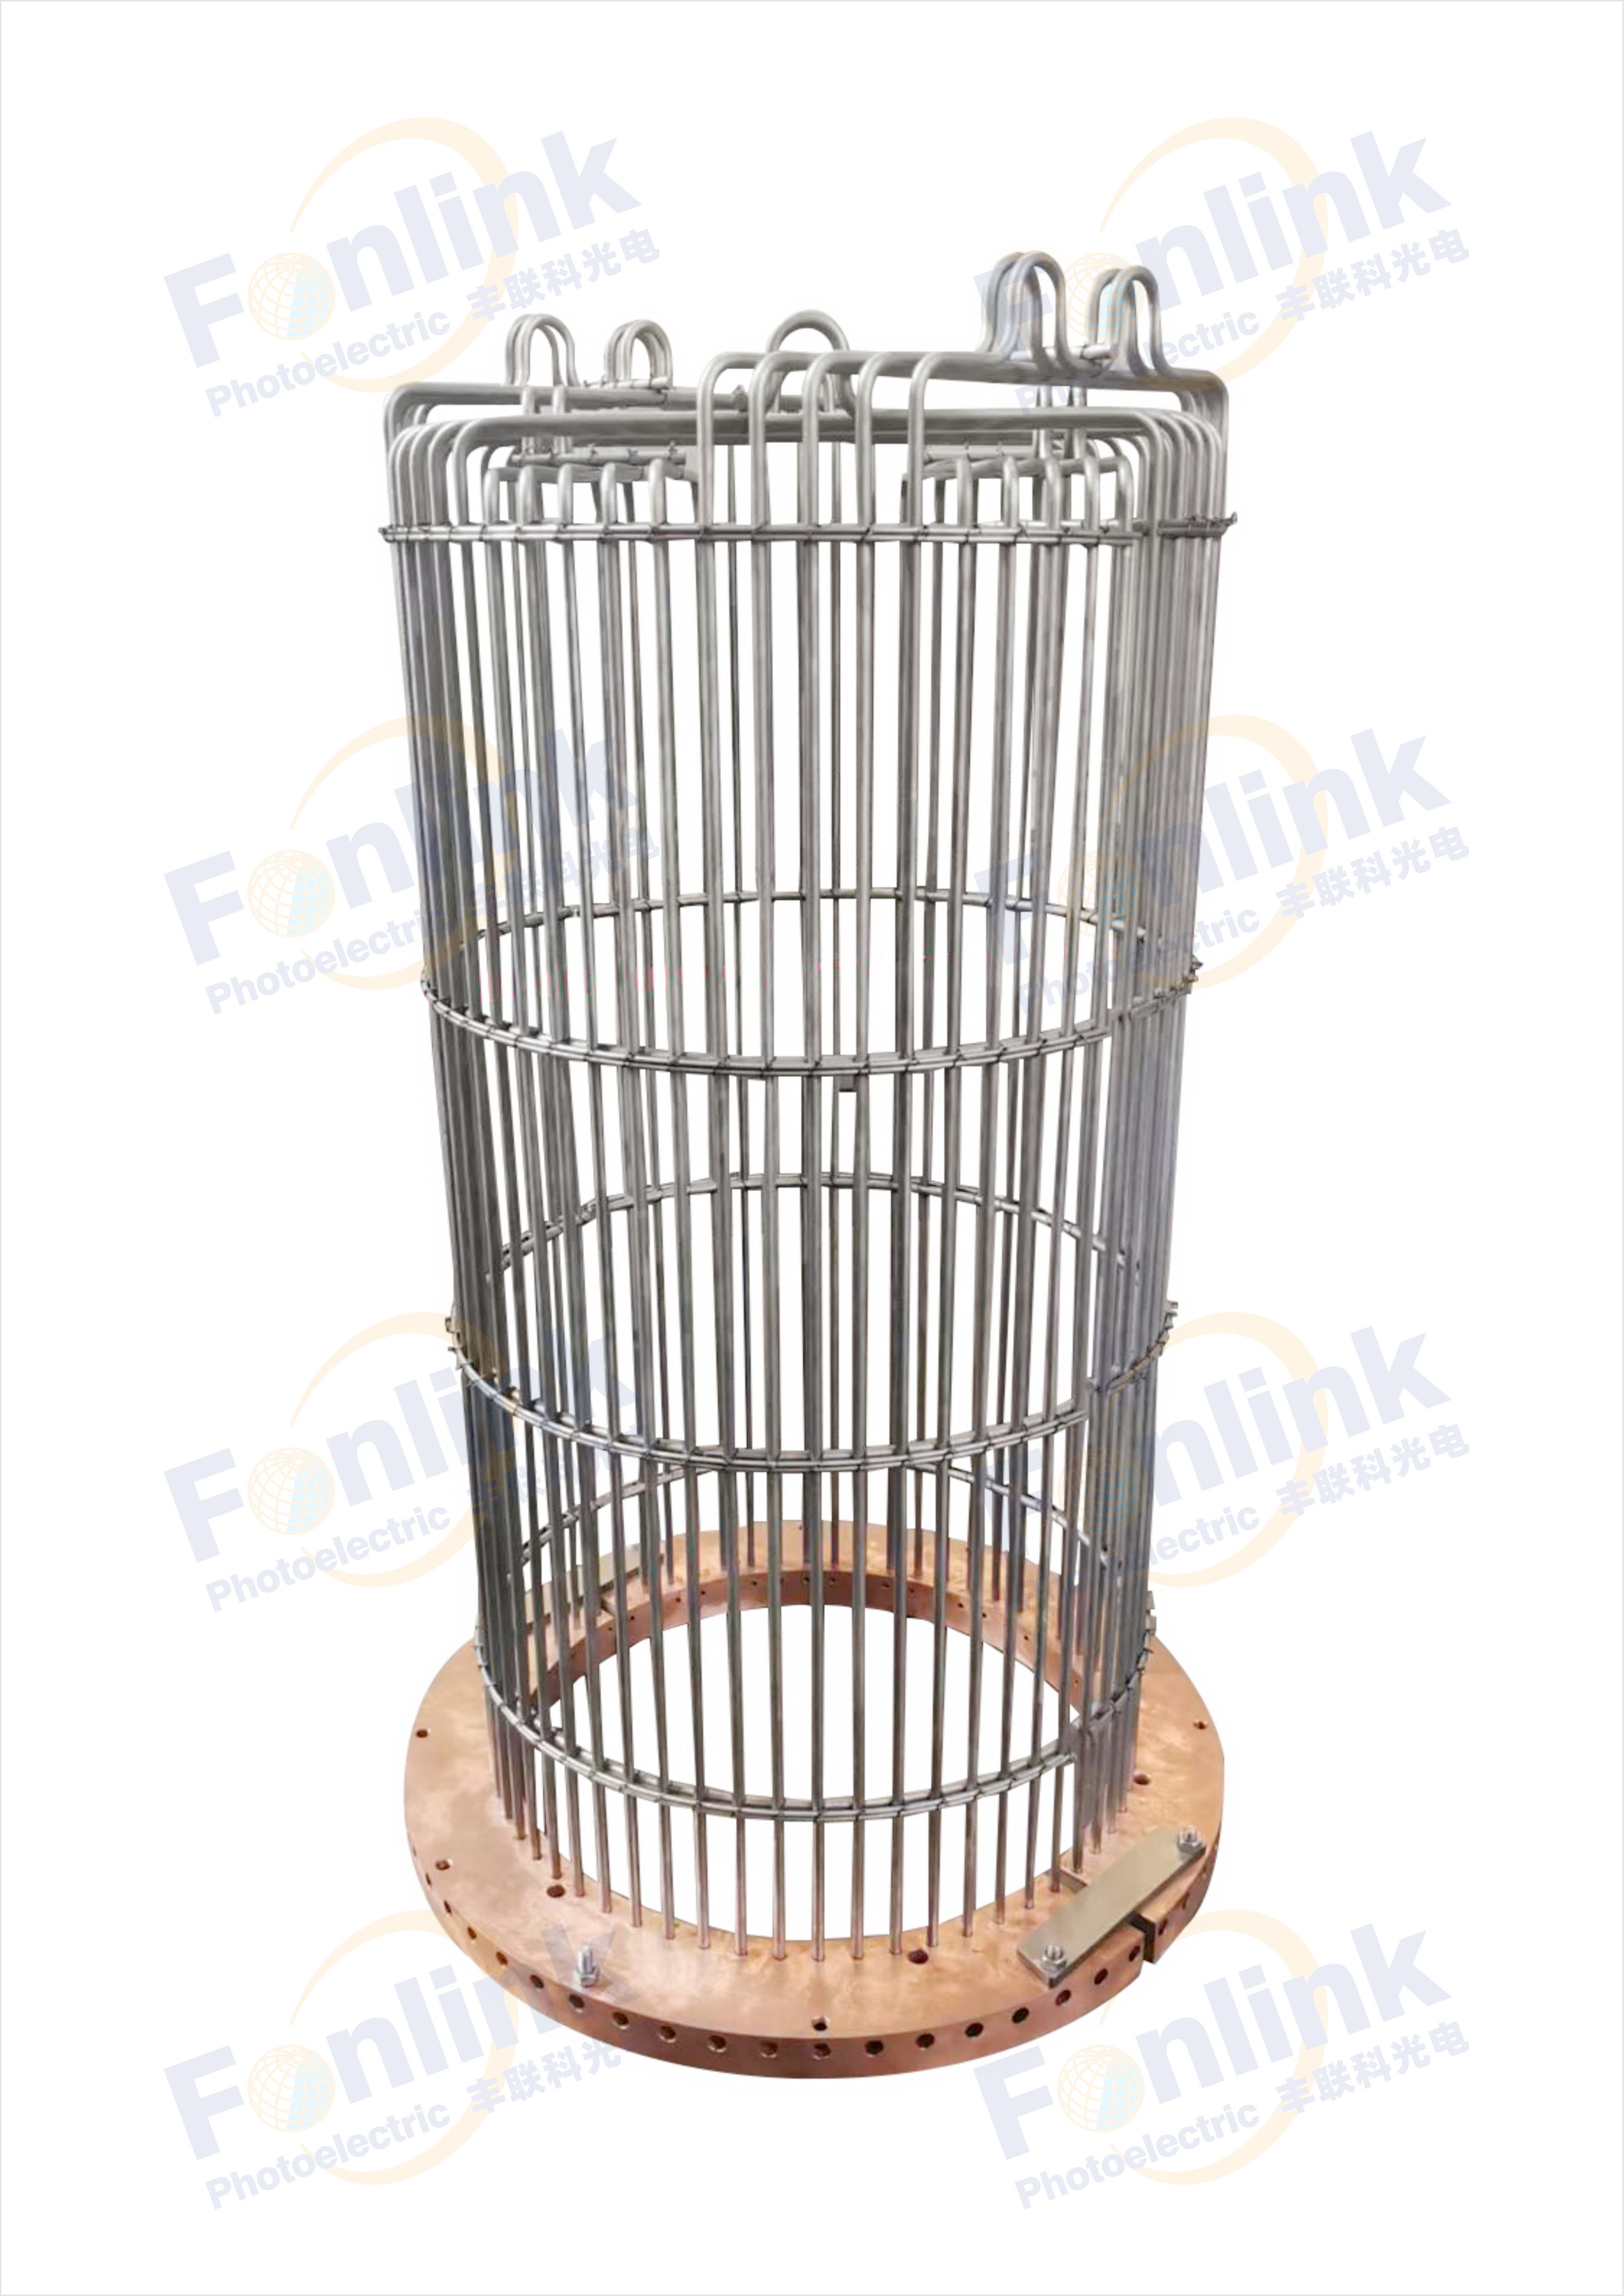 Bird cage heating element